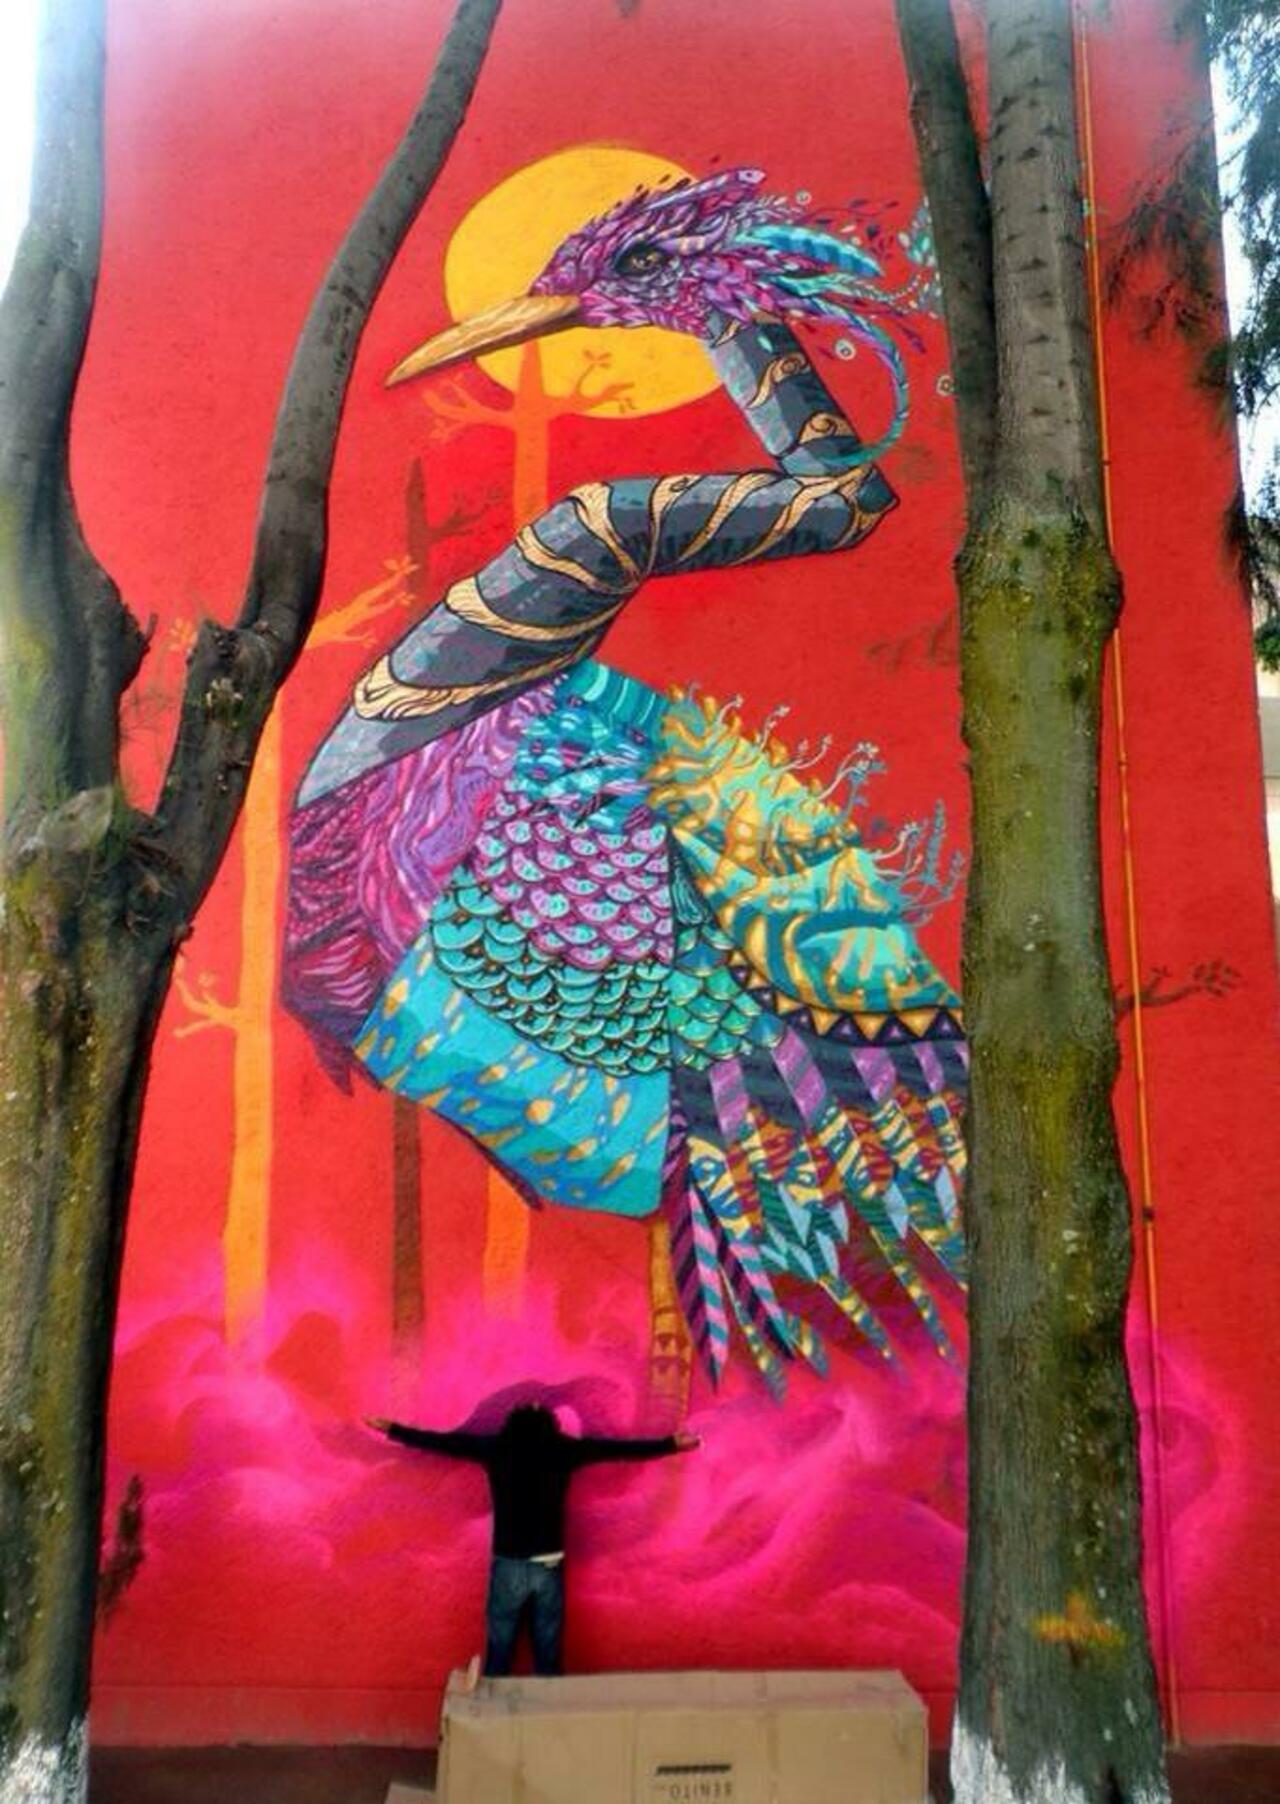 'Songs of Colour'

Sublime Nature in Street Art by NacHo Wm ft. Farid Rueda 

#art #arte #graffiti #streetart http://t.co/v5TgJZF2iq